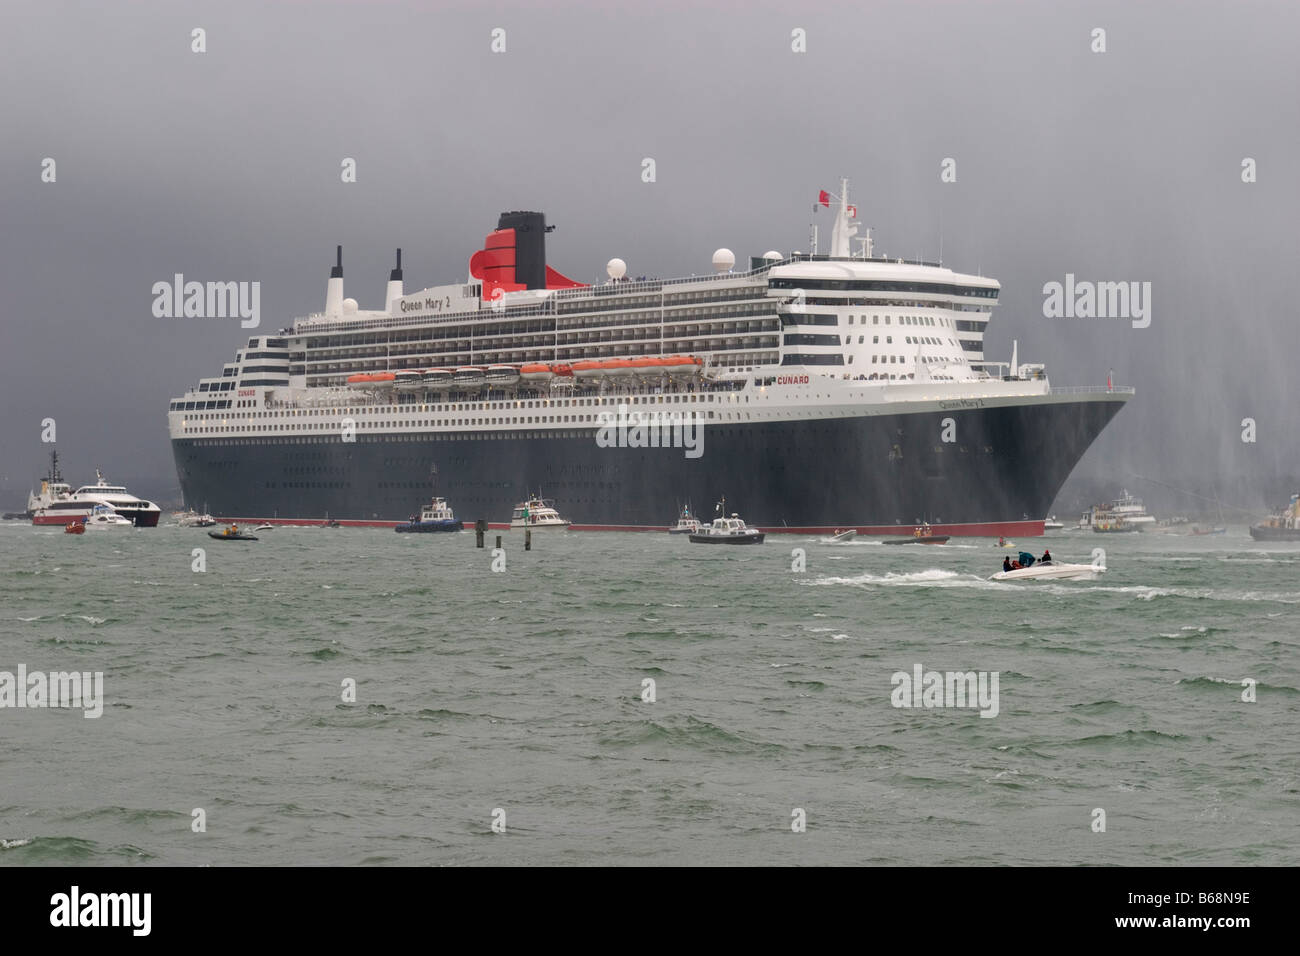 El mayor buque de crucero Queen Mary 2 pone rumbo a los Estados Unidos en su viaje inaugural desde el puerto de Southampton. Foto de stock